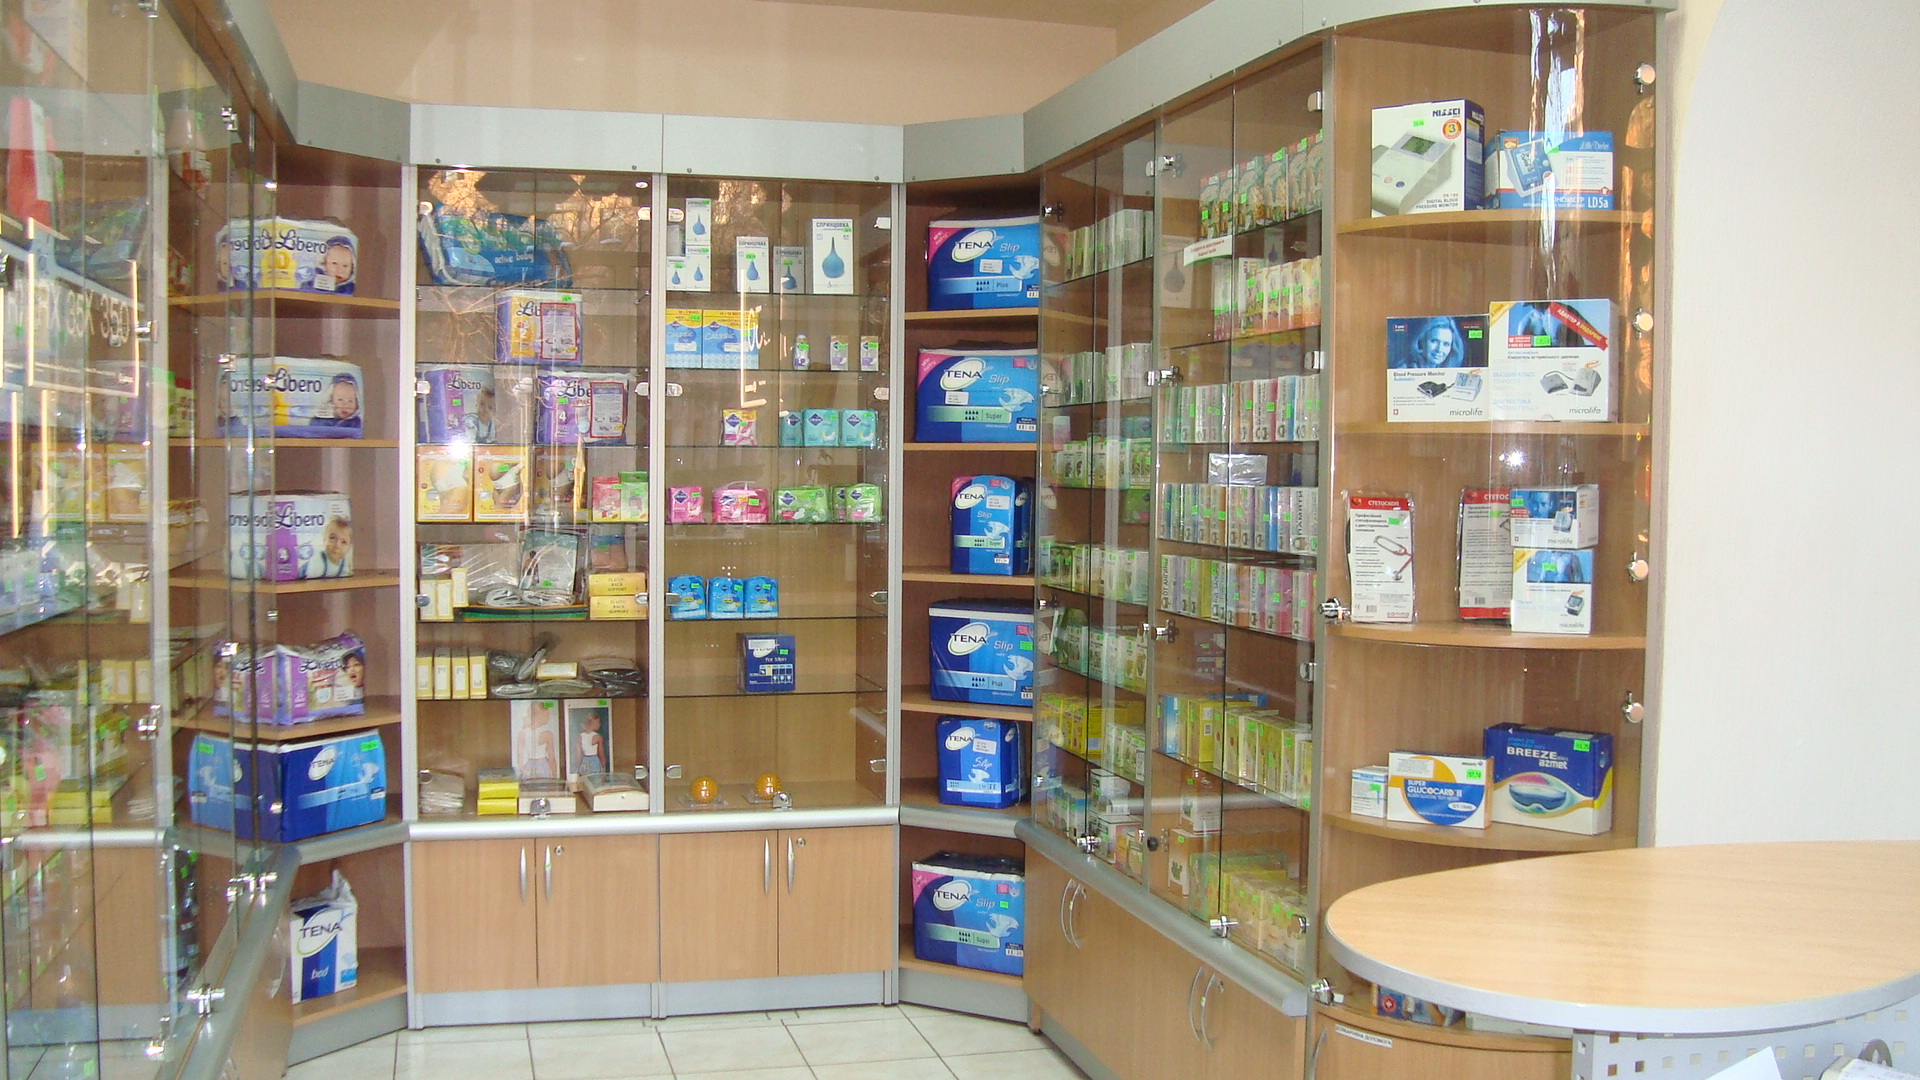 В России продаются самые дорогие лекарства в мире